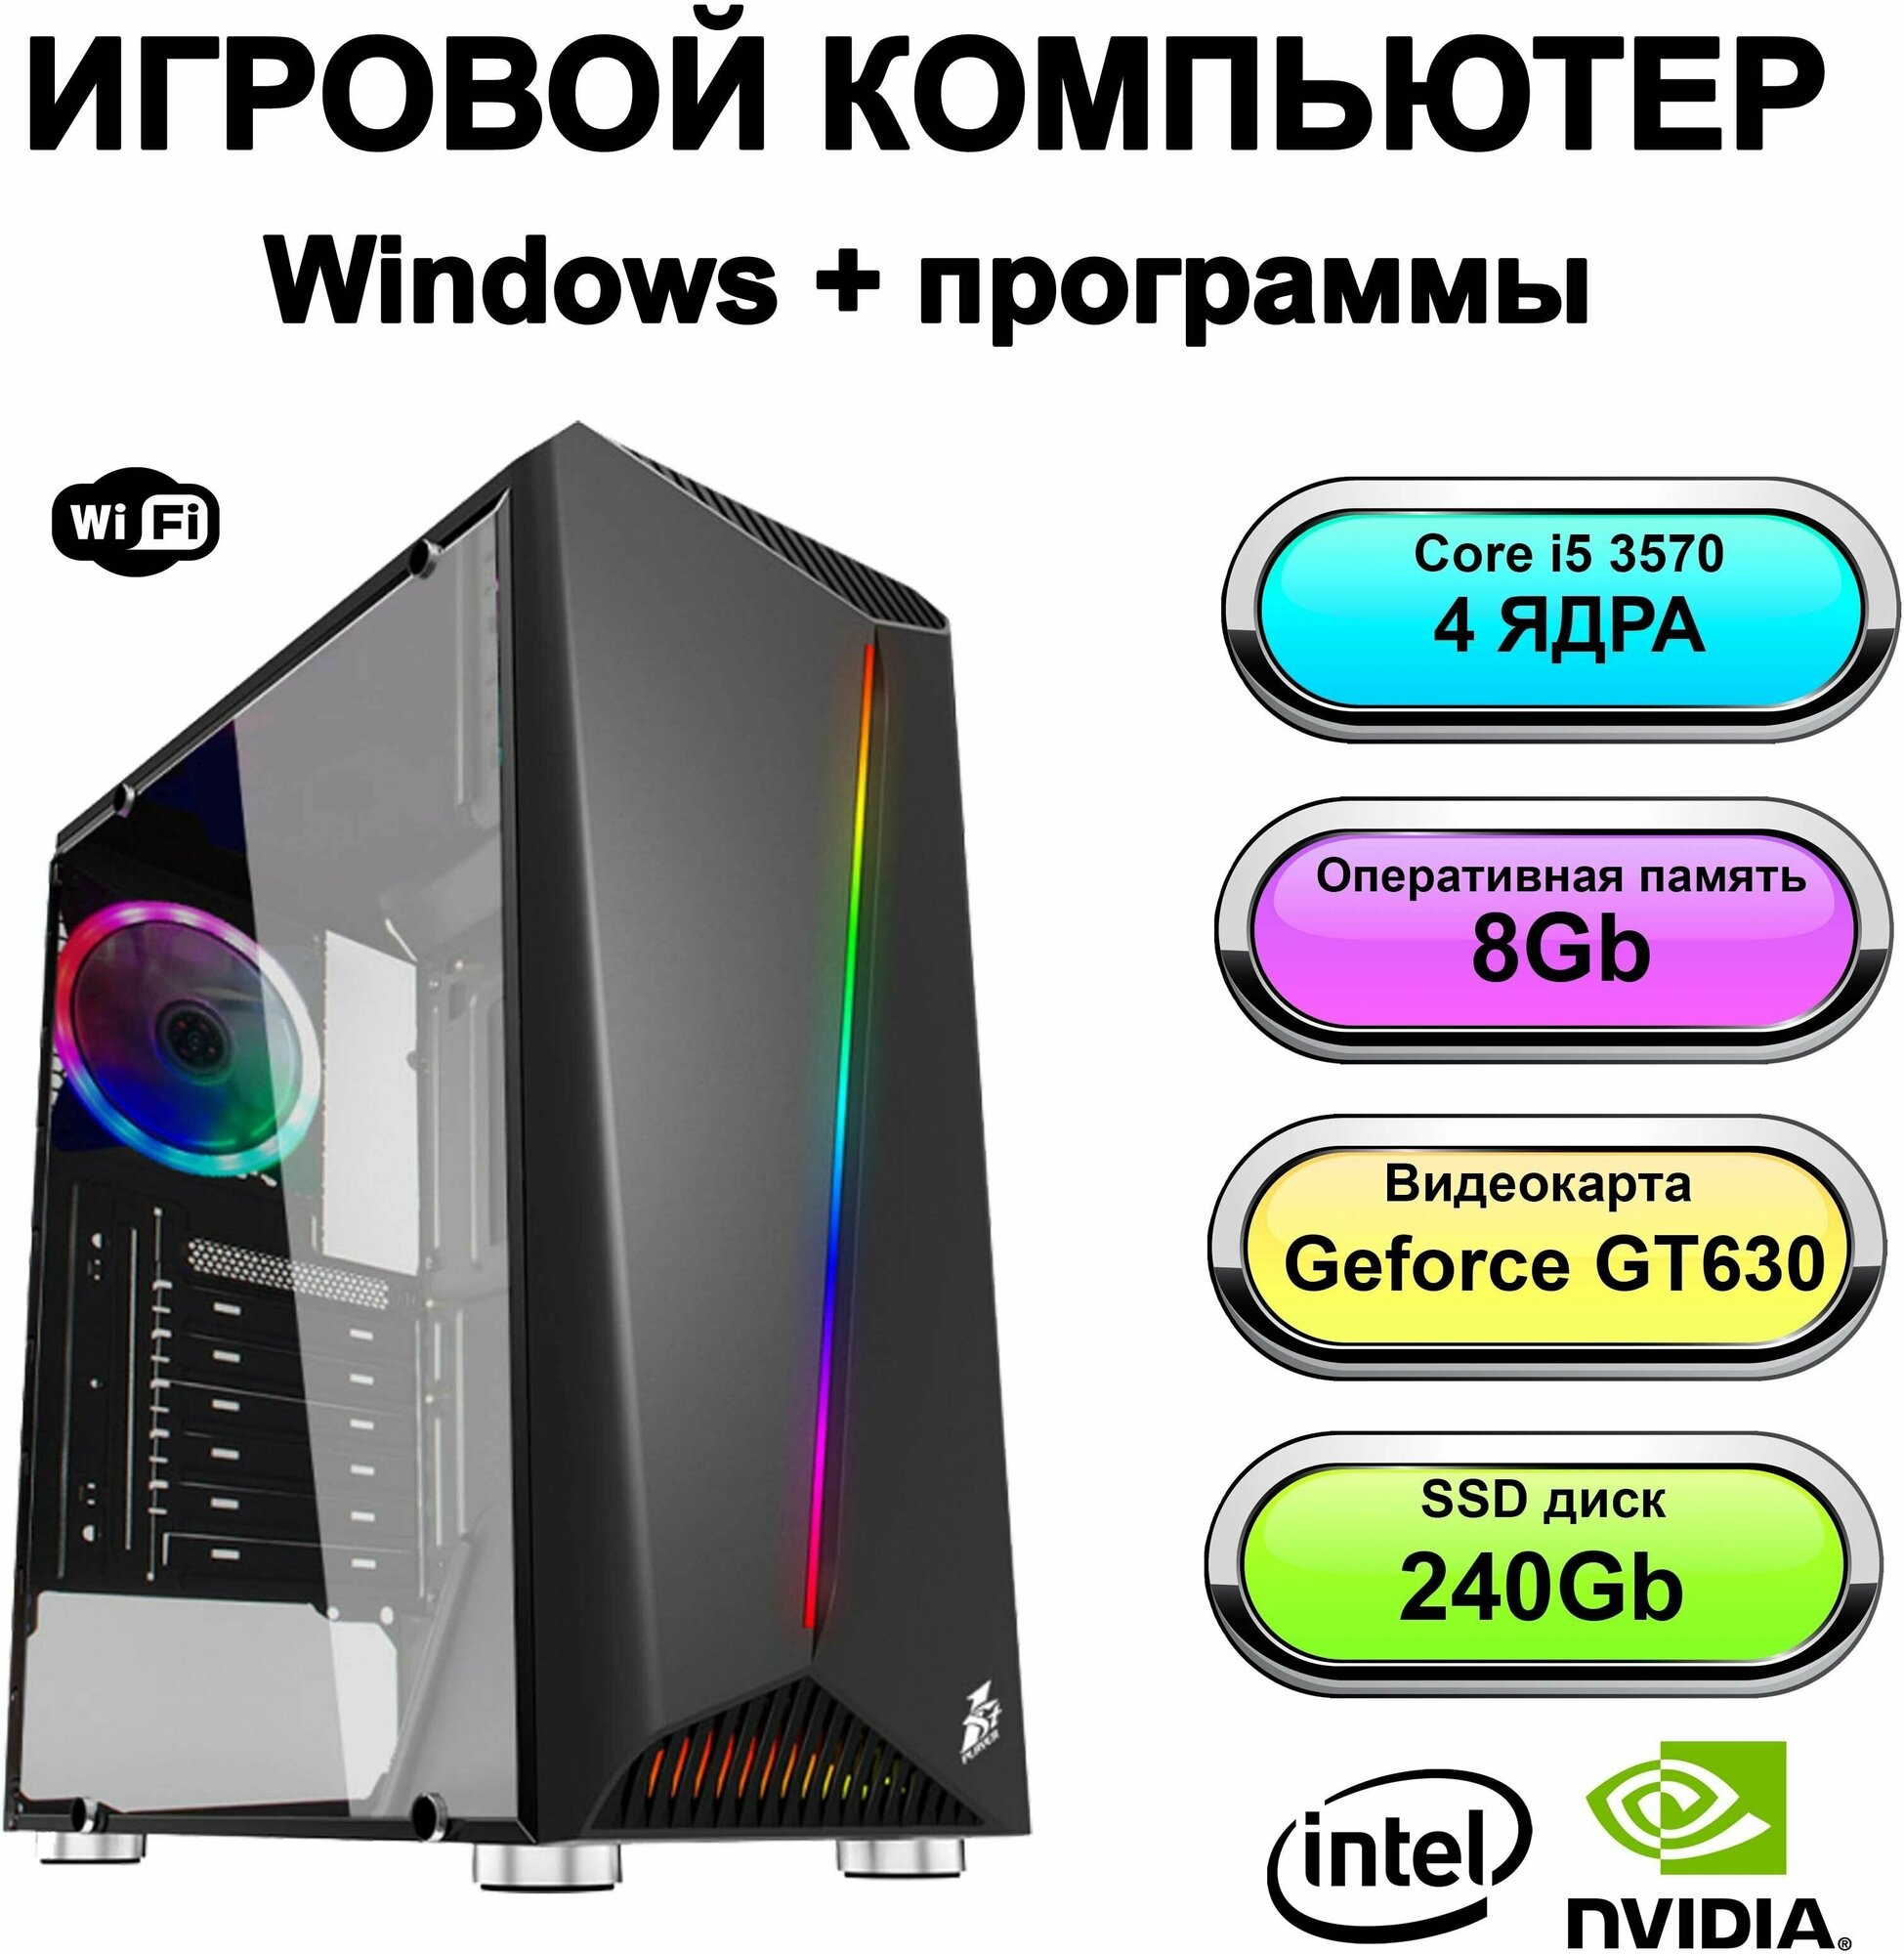 Игровой системный блок Power PC мощный игровой компьютер (Intel Core i5-3570 (3.4 ГГц), RAM 8 ГБ, SSD 240 ГБ, Geforce GT 630 (2 Гб), Windows 10 Pro